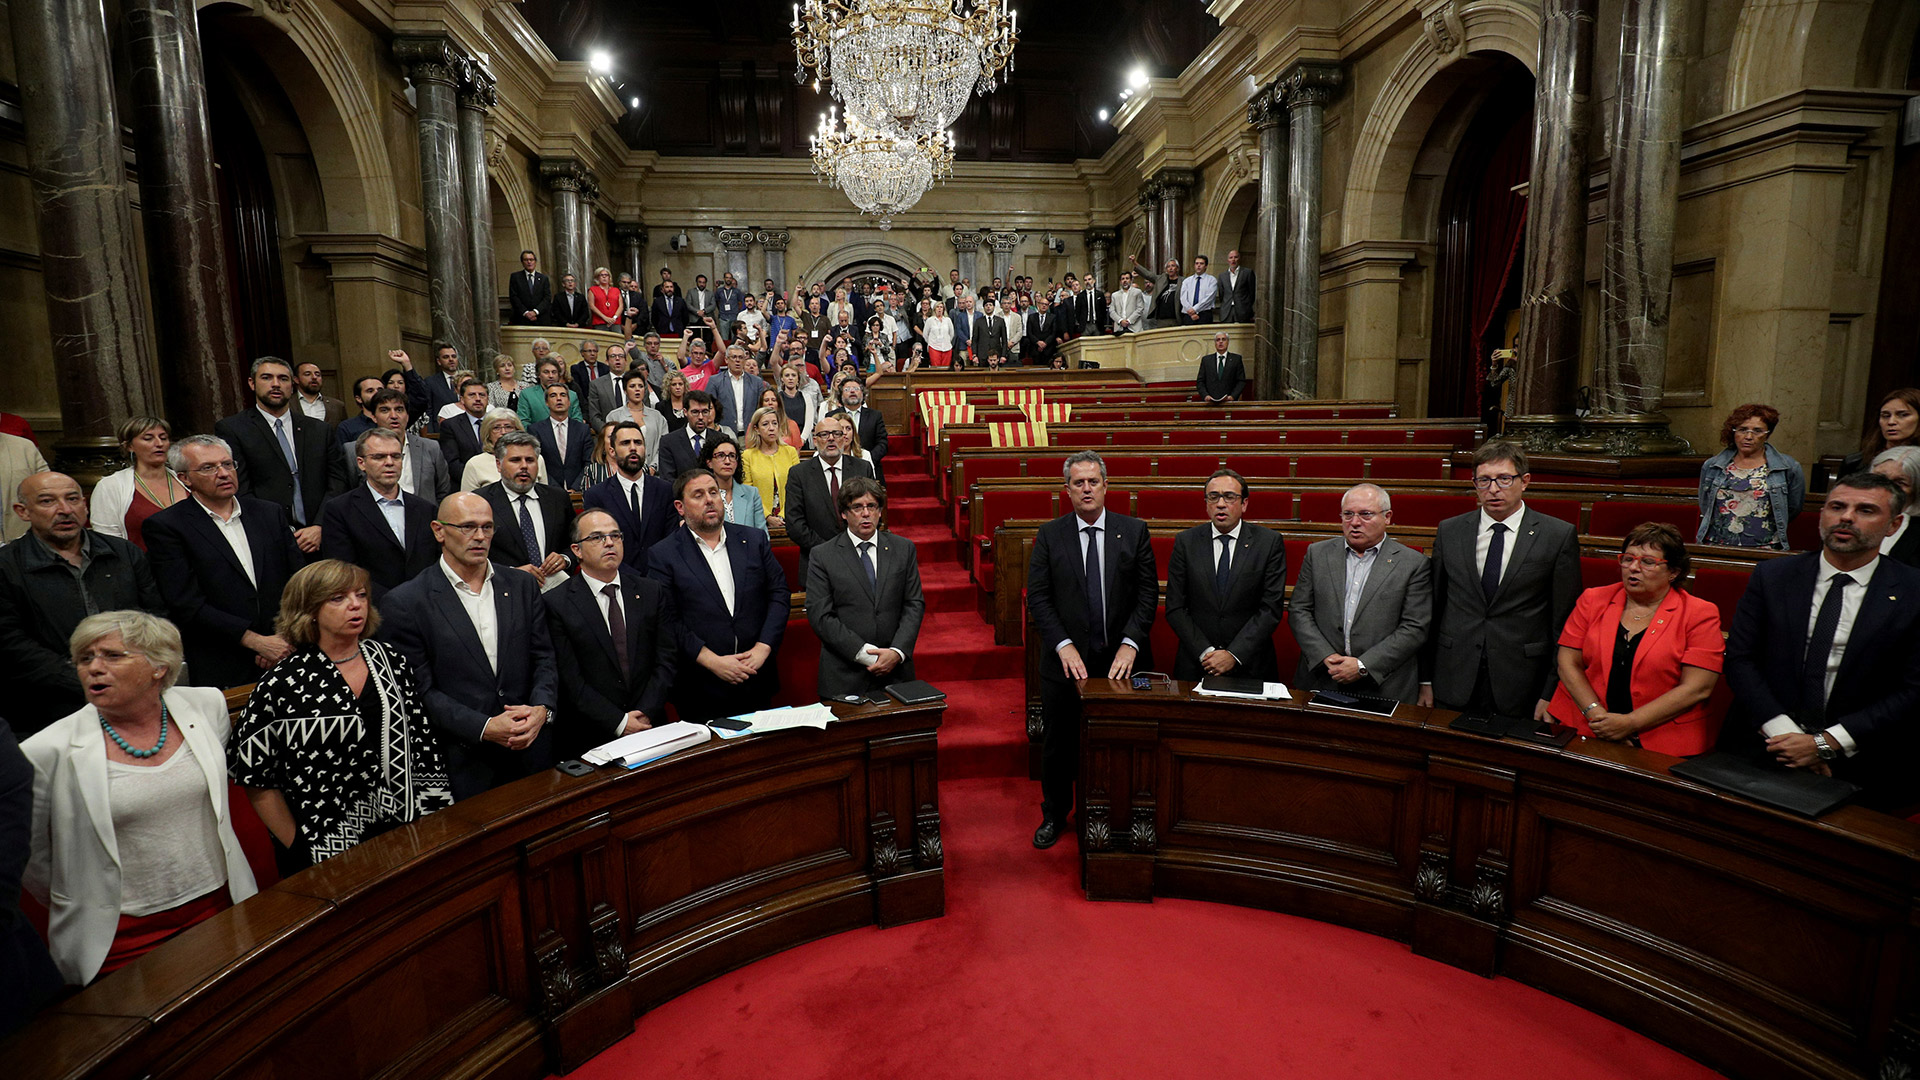 El adiós a la democracia del nacionalismo catalán